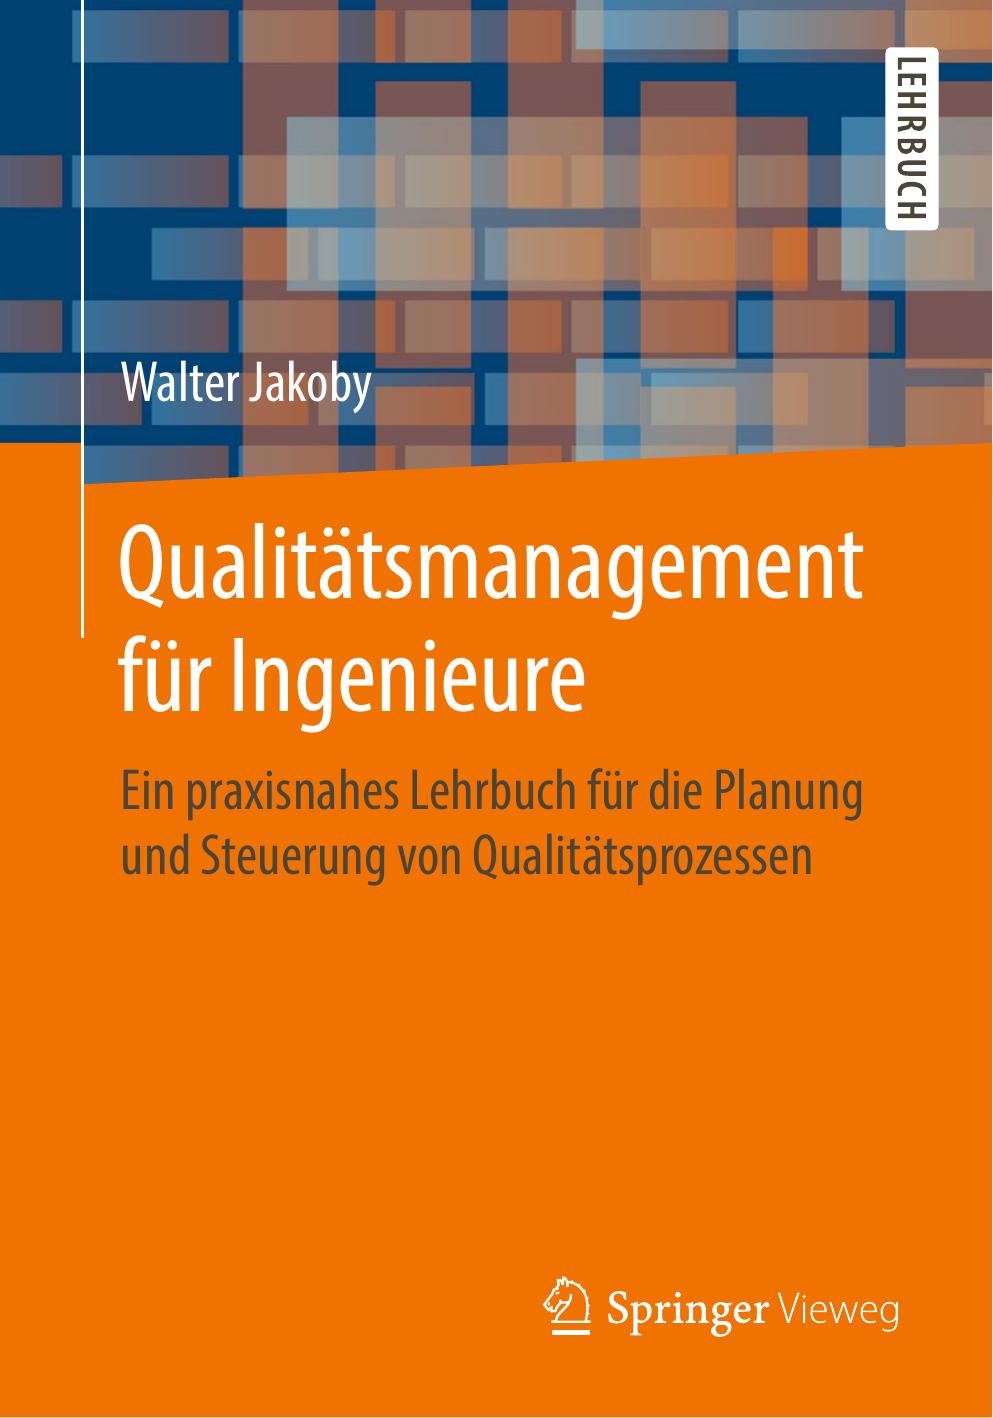 Qualitätsmanagement für Ingenieure: Ein praxisnahes Lehrbuch für die Planung und Steuerung von Qualitätsprozessen